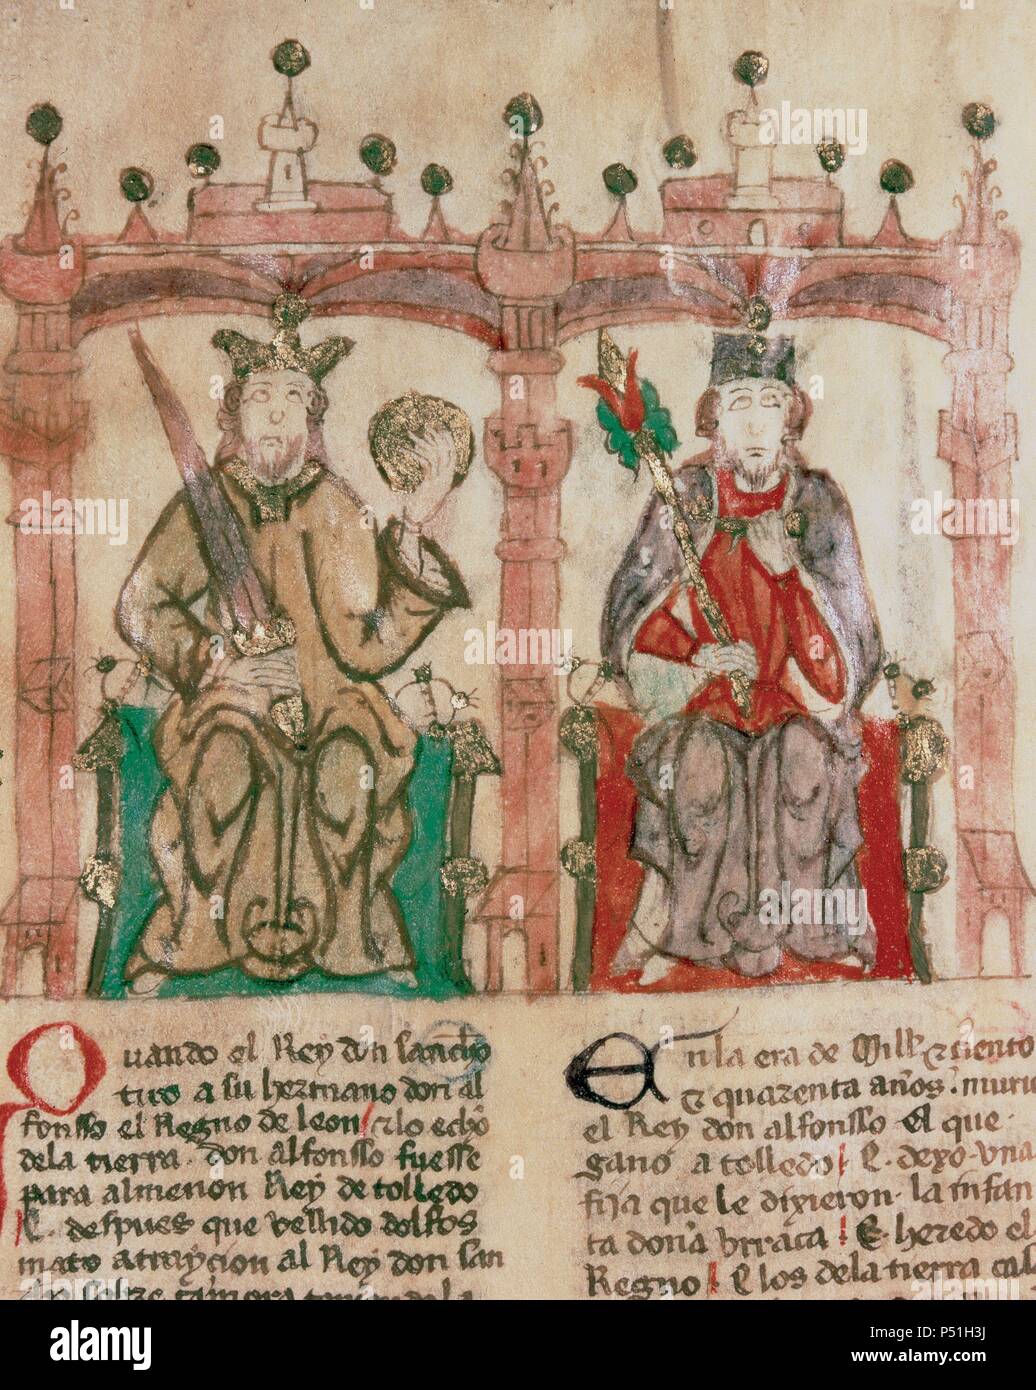 ALFONSO VI (1040-1109). Rey de León (1065-1109) y Castilla (1072-1109). Hijo segundo de Fernando I y su esposa Sancha. RAMON BERENGUER I 'El Vell' (h.1023-1076). Conde de Barcelona y Girona (1035-1076), de Olérdola (1049-76) y de Ausona (1054-76). Hijo de Berenguer Ramon I y Sancha de Castilla. Miniatura del s.XI del manuscrito 'SEMBLANZAS DE REYES'. Biblioteca Nacional. Madrid. España. Stock Photo